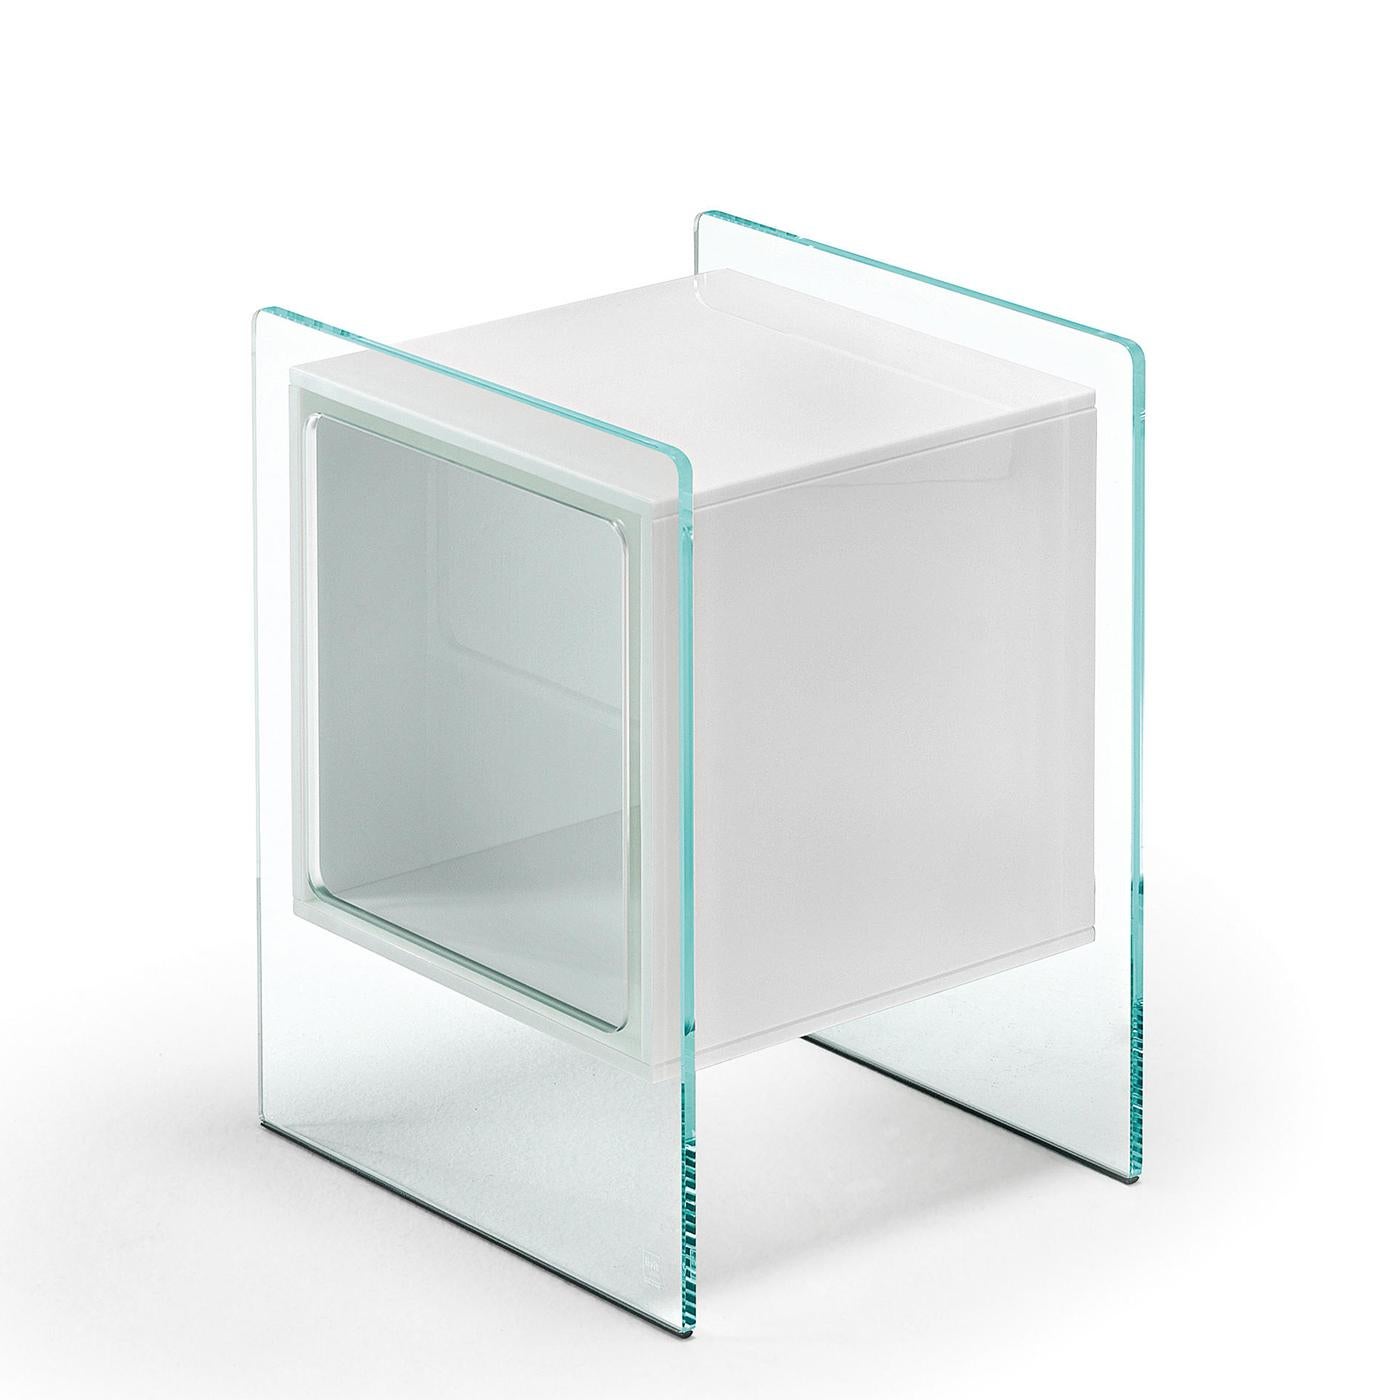 Beistelltischteile quadratisch weiß mit extralight Glas 
struktur und mit quadratischen Teilen aus opalweißem Glas.